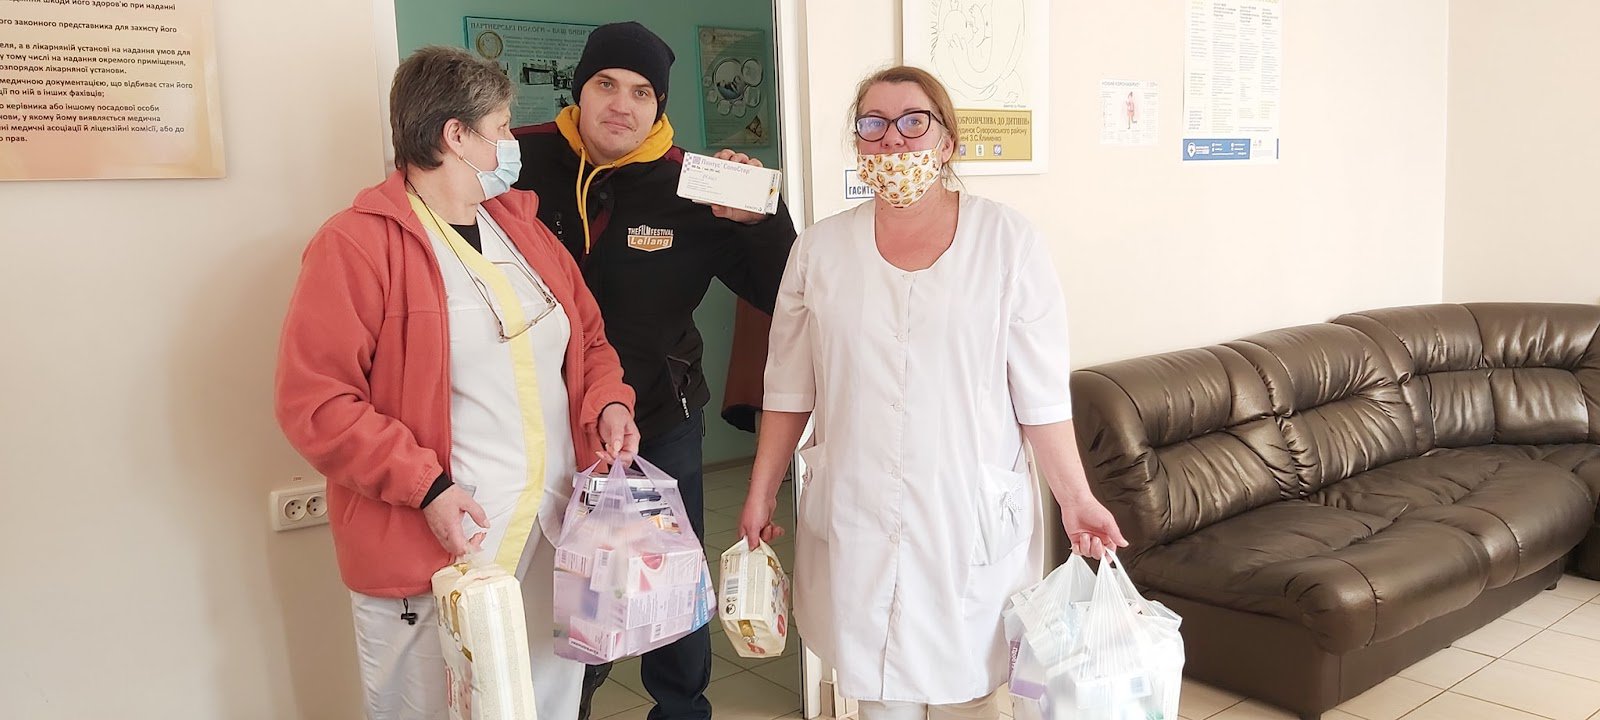 Херсонські лікарі з пакунками ліків від волонтерів. 4 березня 2022 року. Фото з фейсбук-сторінки Ірини Саліхової